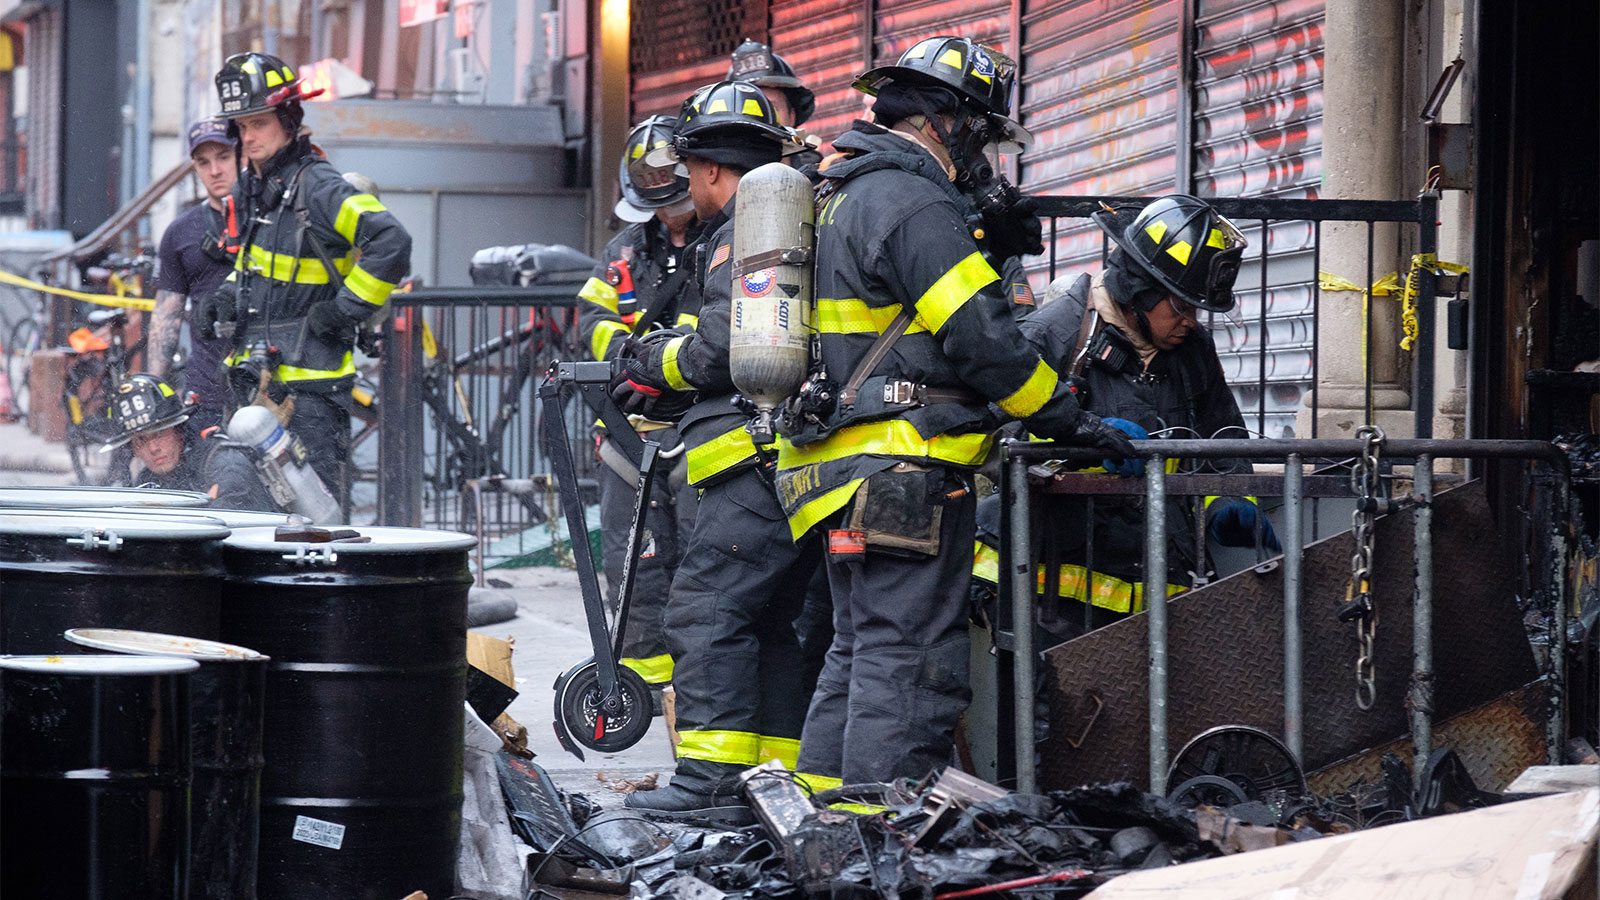 يقف العديد من رجال الإطفاء الذين يرتدون خوذات ومعدات سوداء مقاومة للحريق على الرصيف بين واجهة متجر مغلقة، وبعض القمامة، وبعض الصناديق الأسطوانية